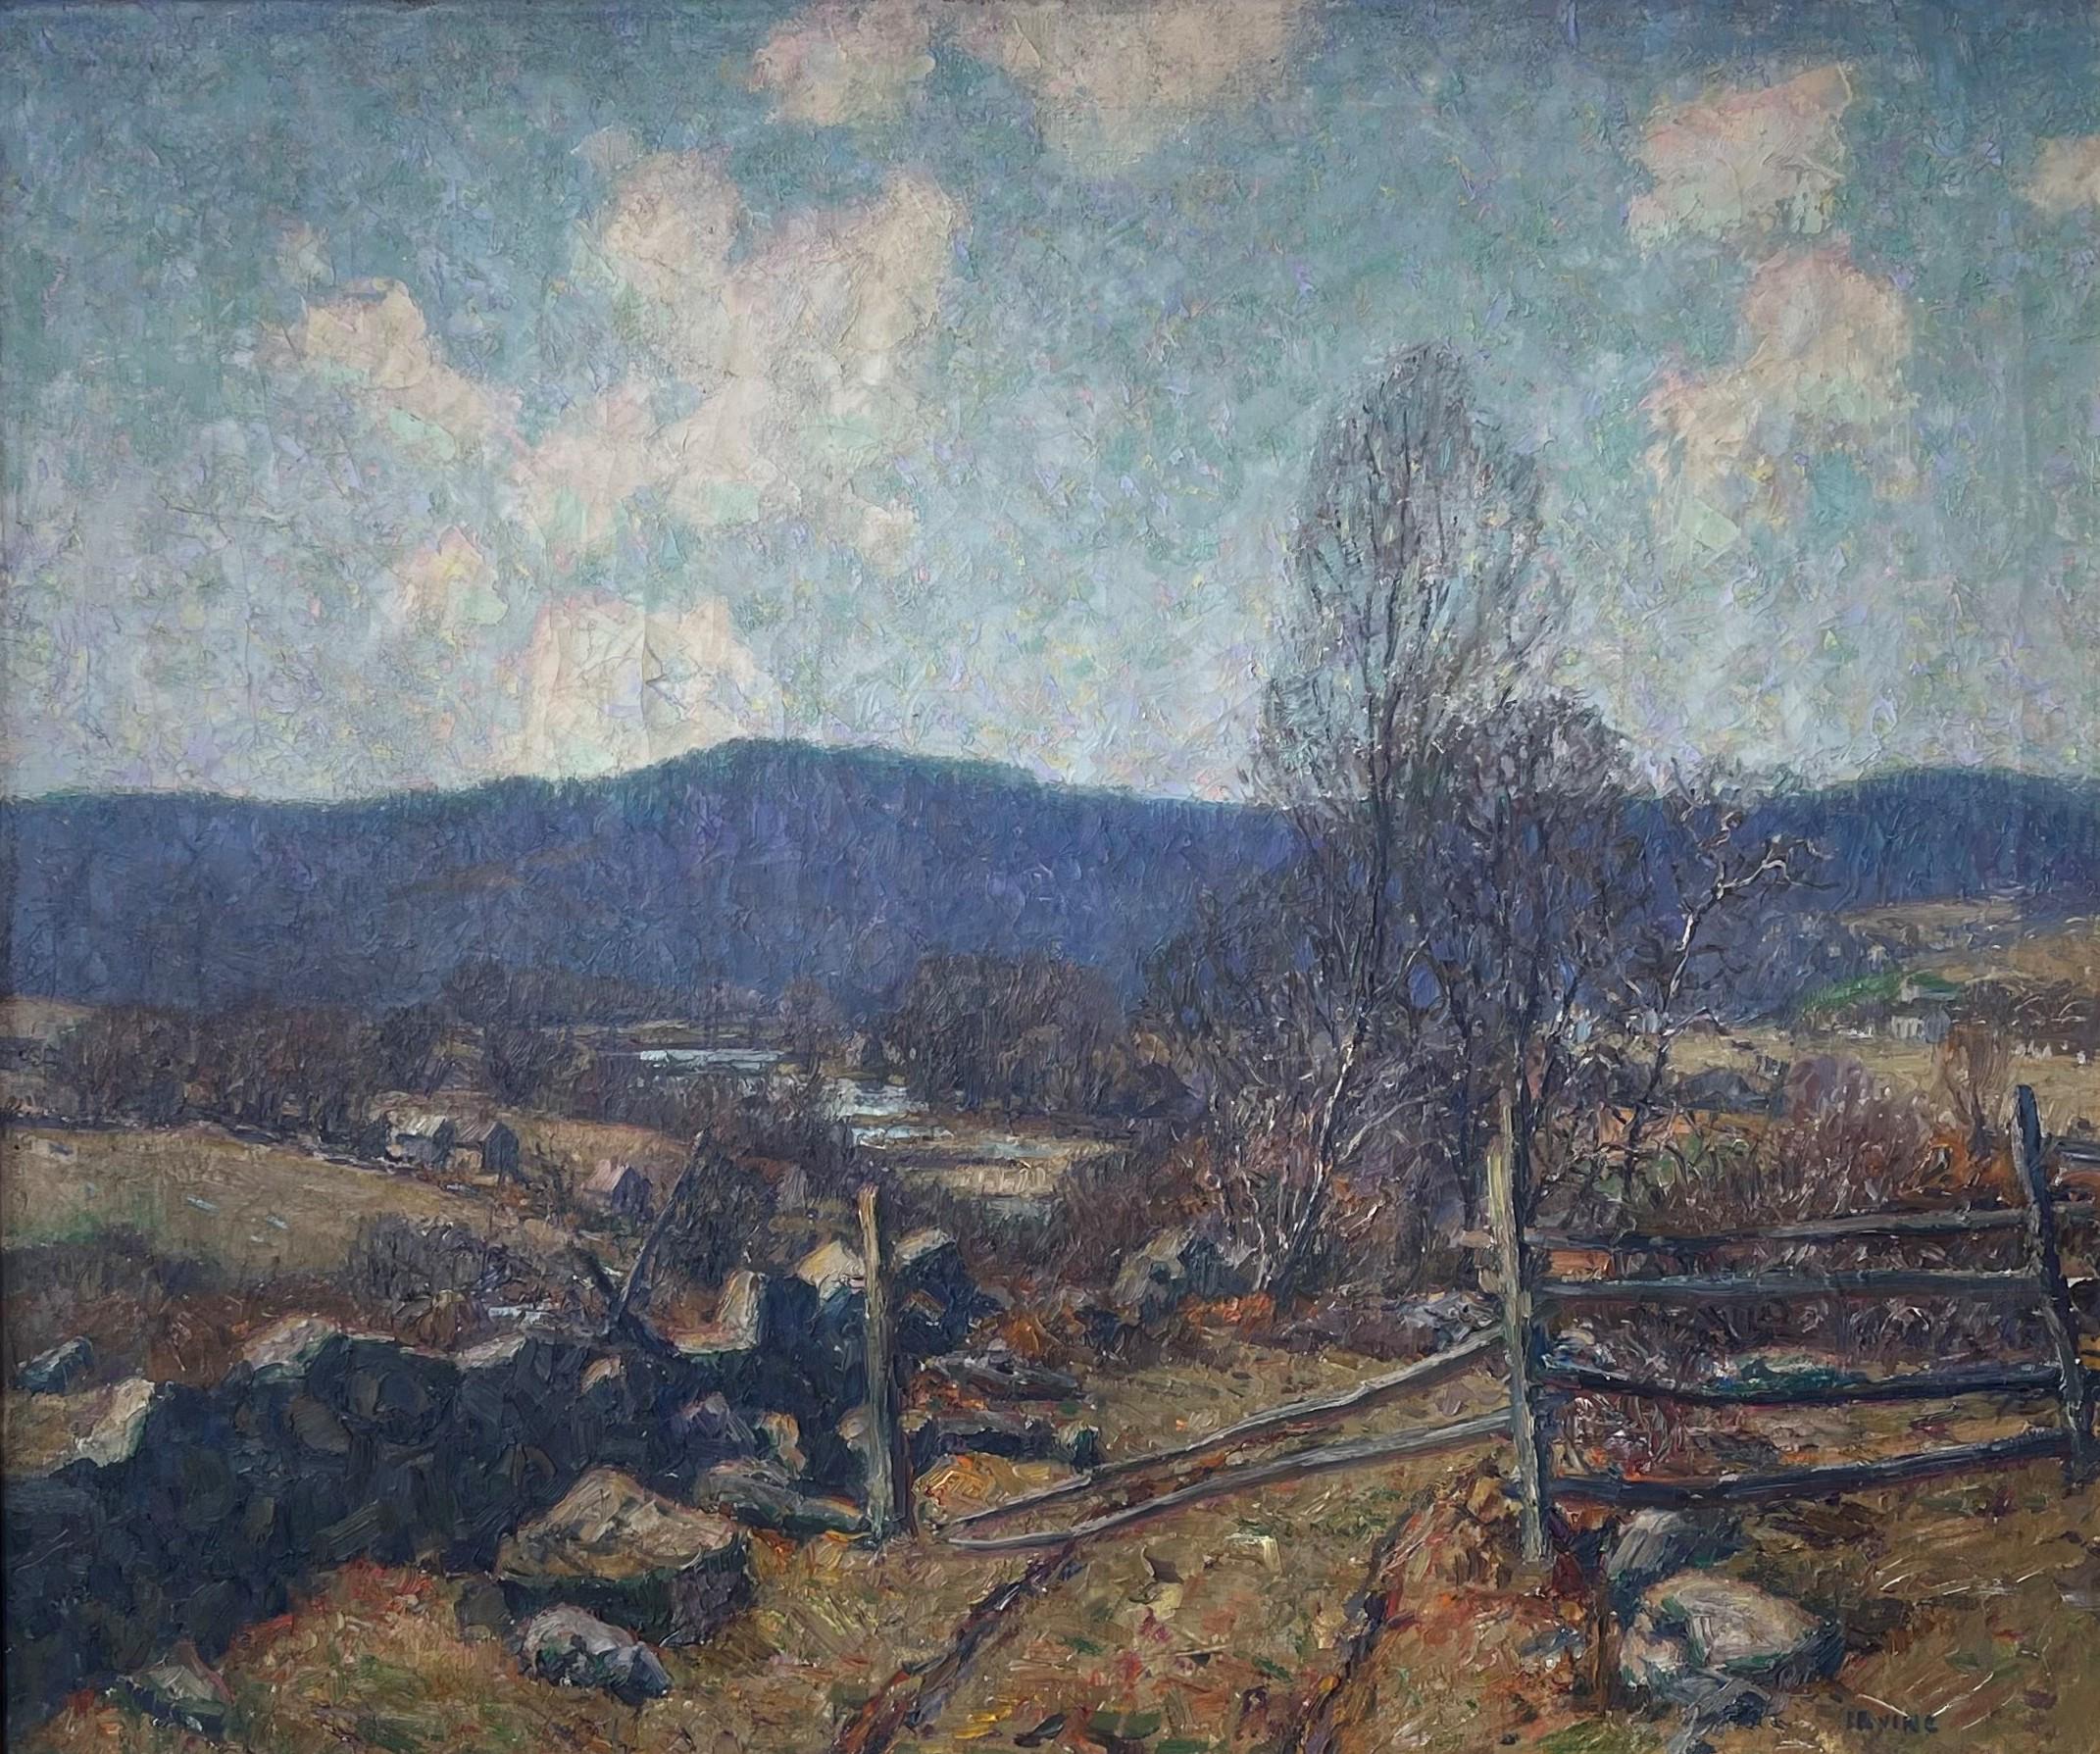  Autumn Field, Ölgemälde des amerikanischen Impressionisten Wilson Irvine 1869-1936 (Impressionismus), Painting, von Wilson Henry Irvine